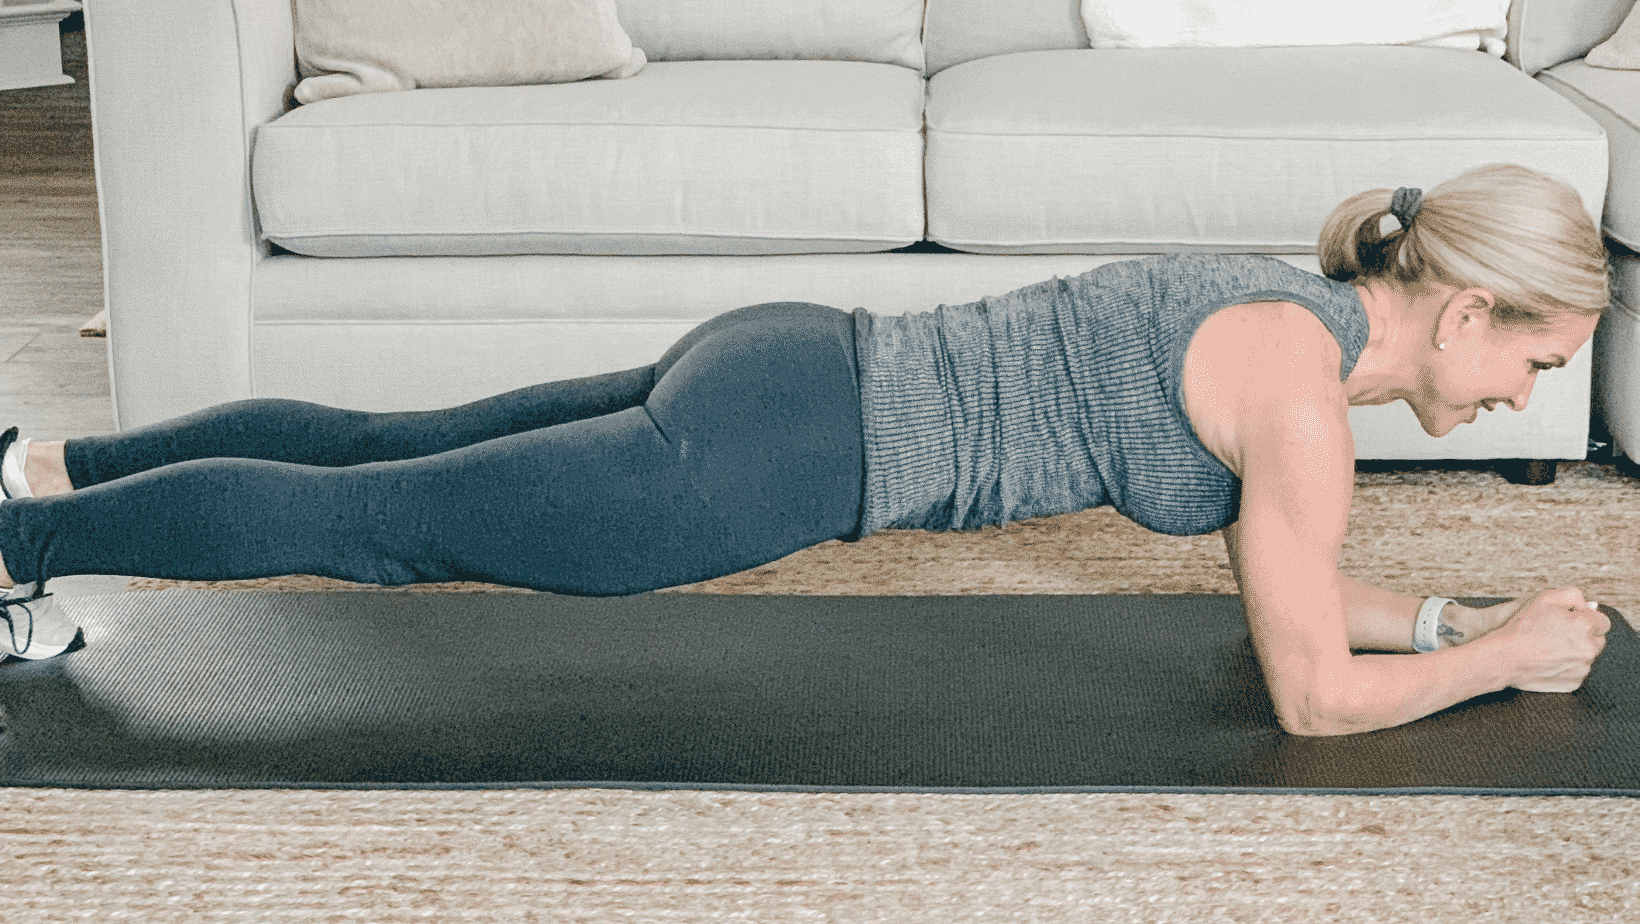 Chris Freytag doing a forearm plank on a black mat